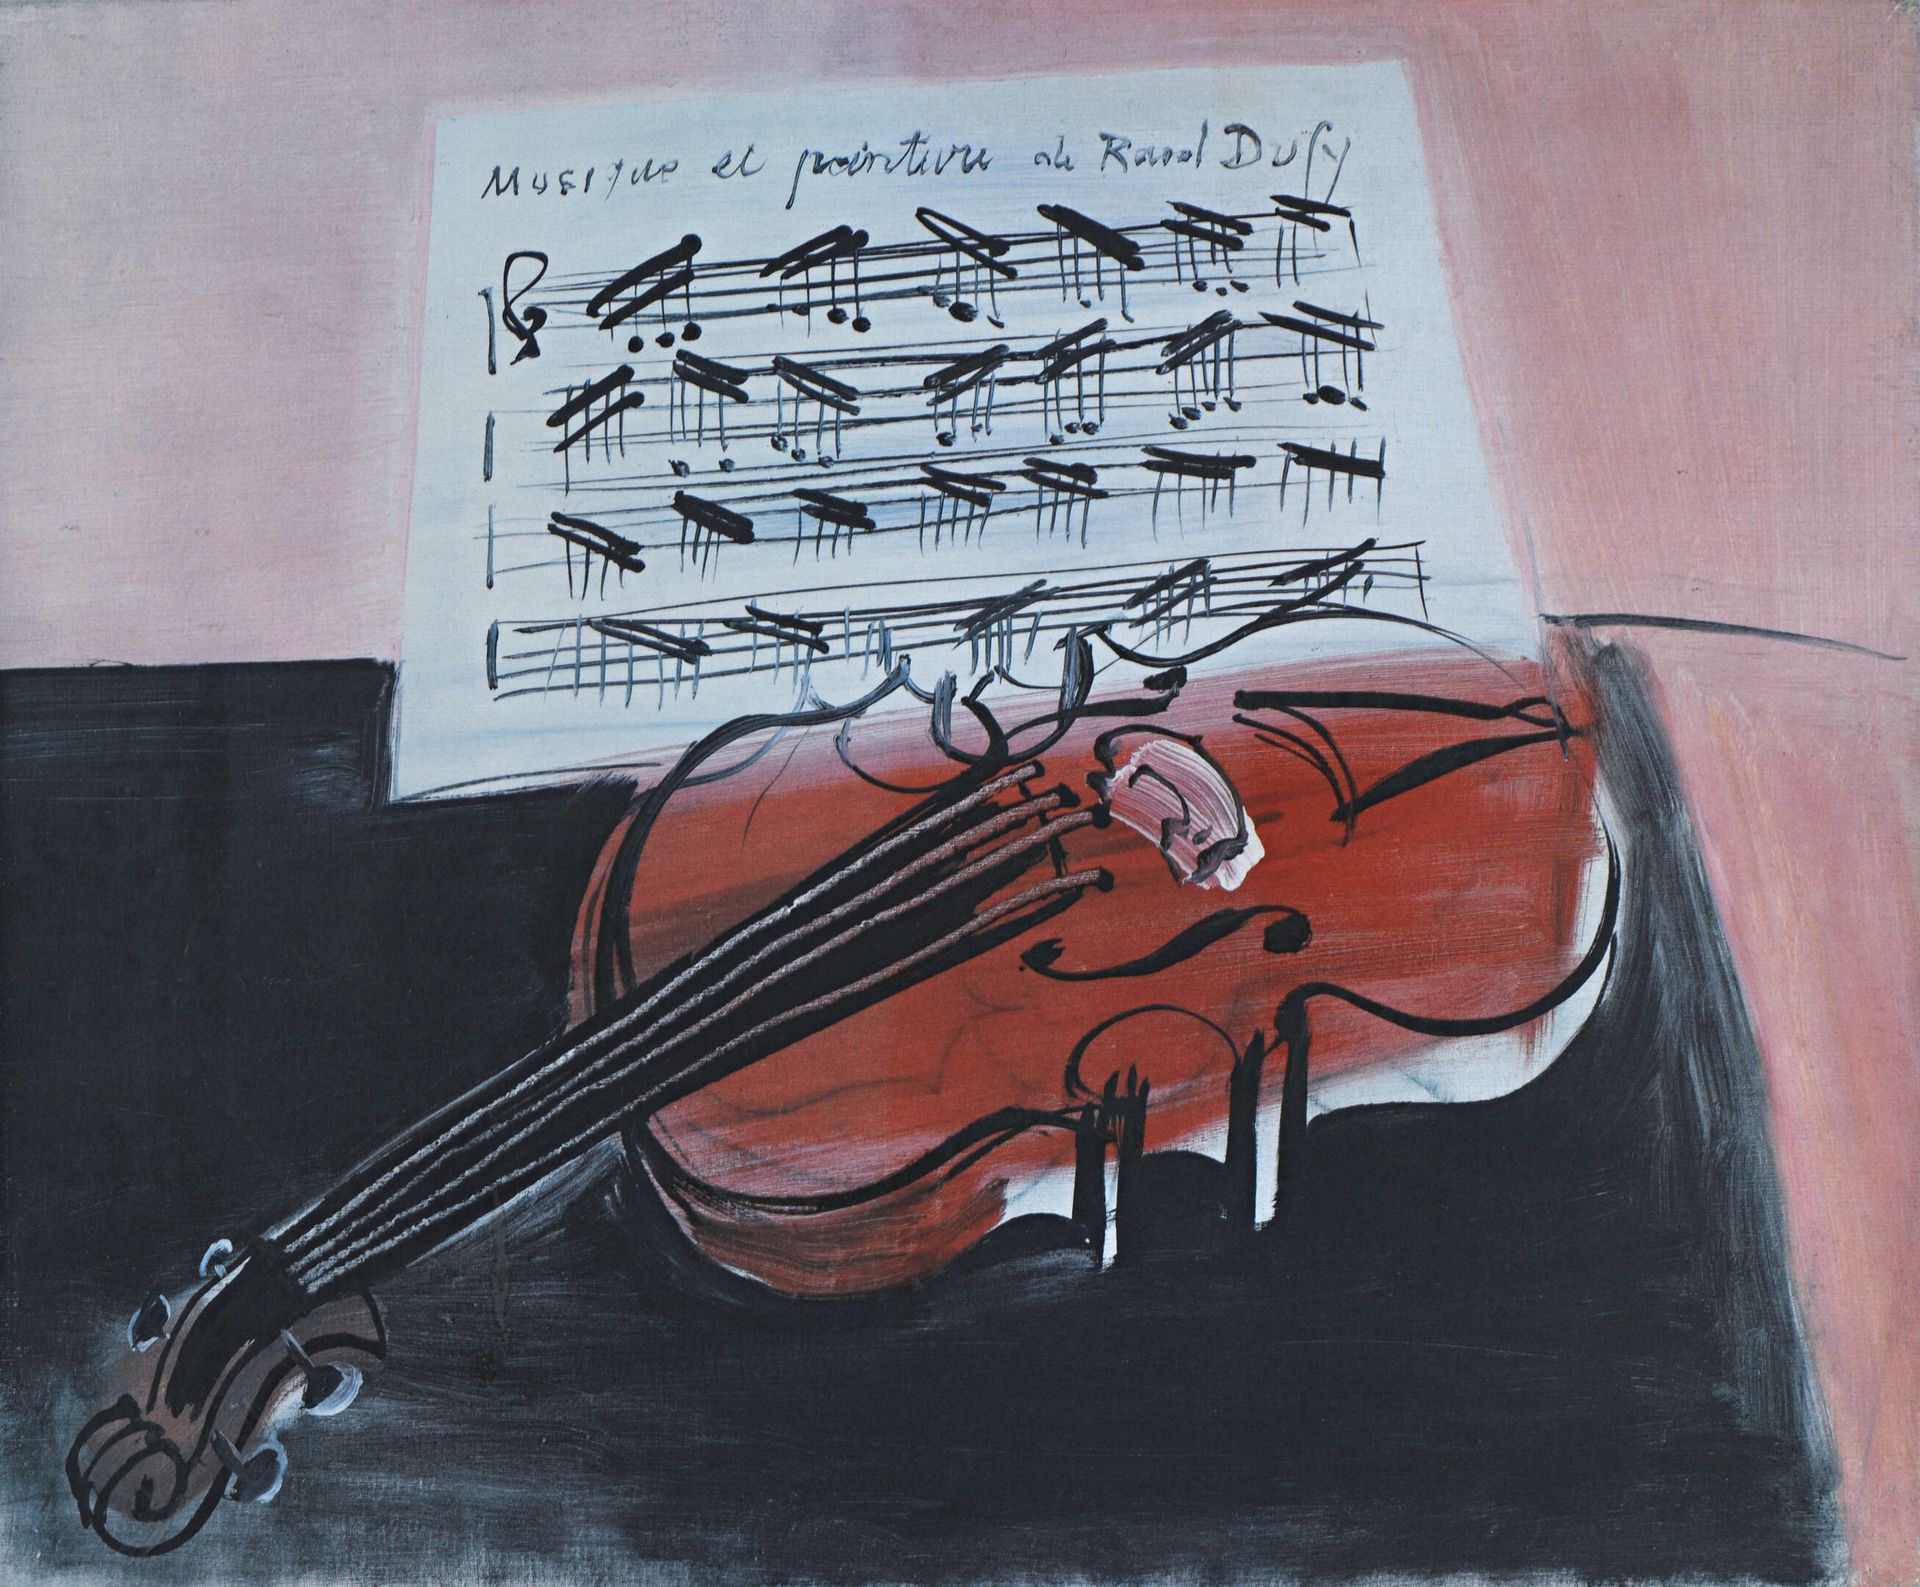 Null 在RAOUL DUFY之后
"音乐和绘画"。
纸上胶印。
49 x 69厘米。